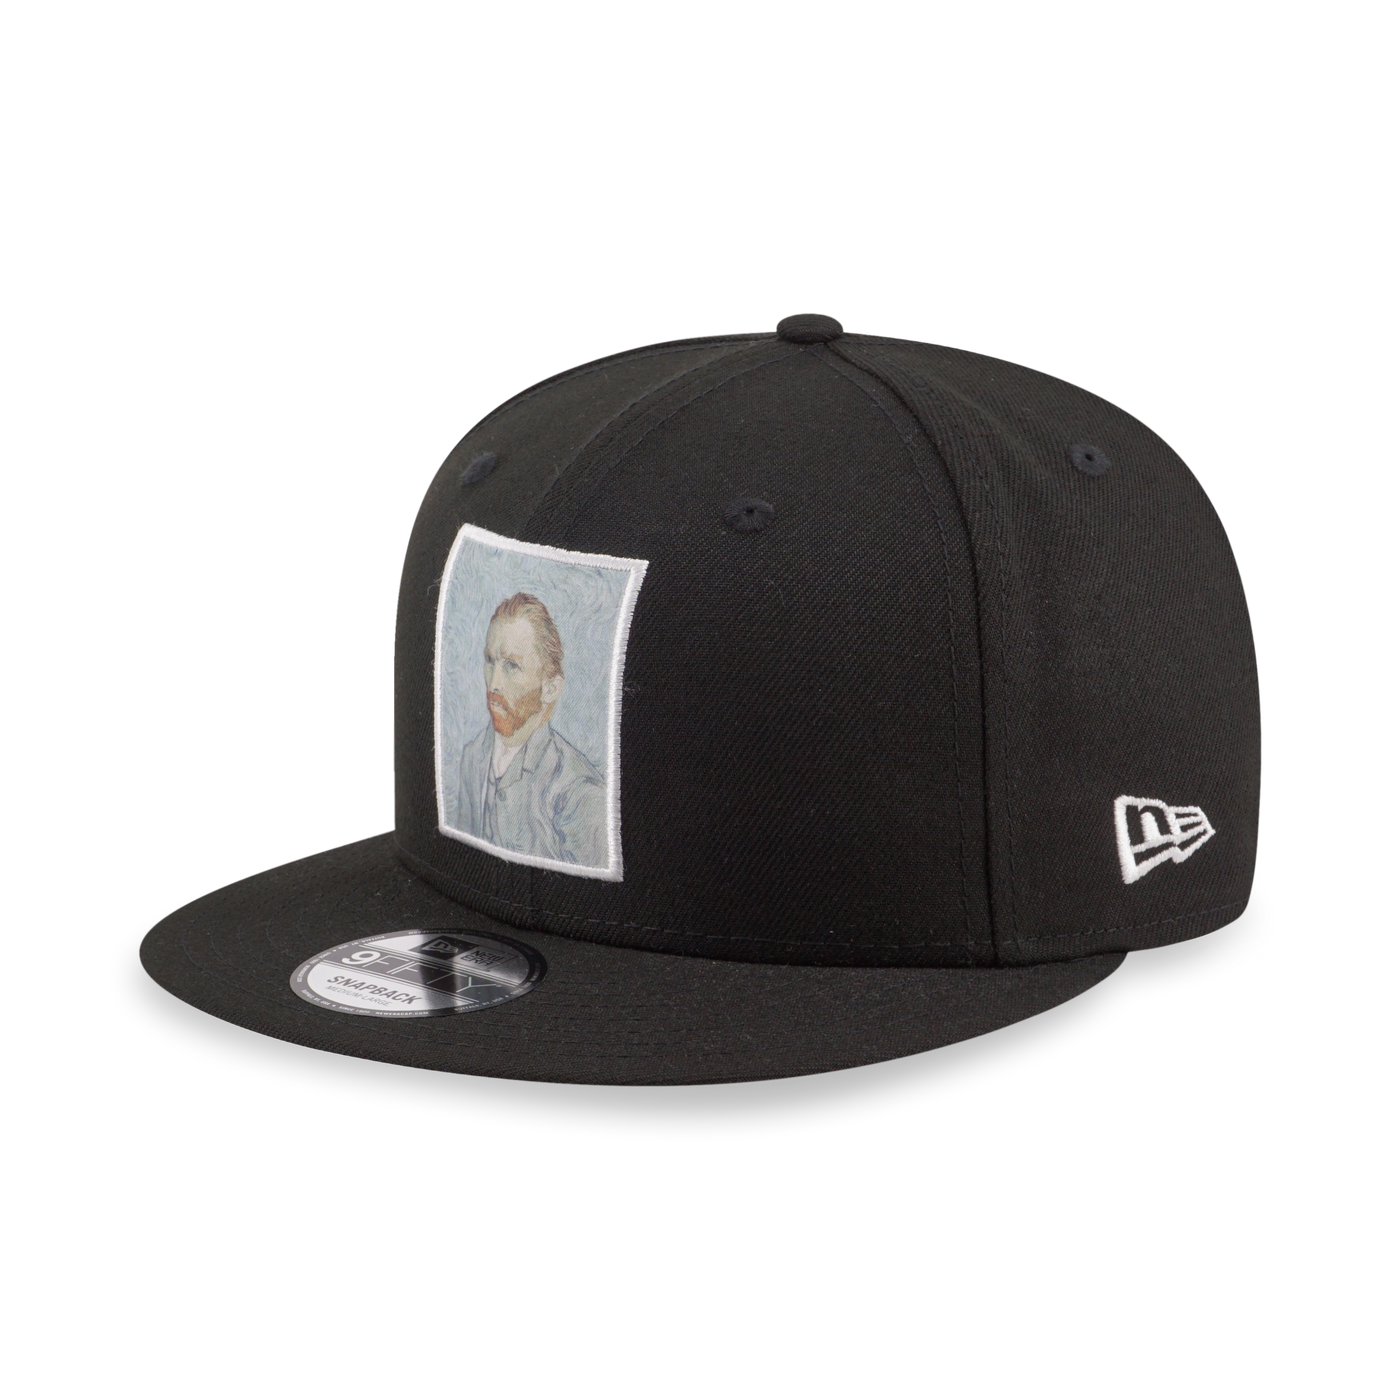 VAN GOGH BLACK 9FIFTY CAP